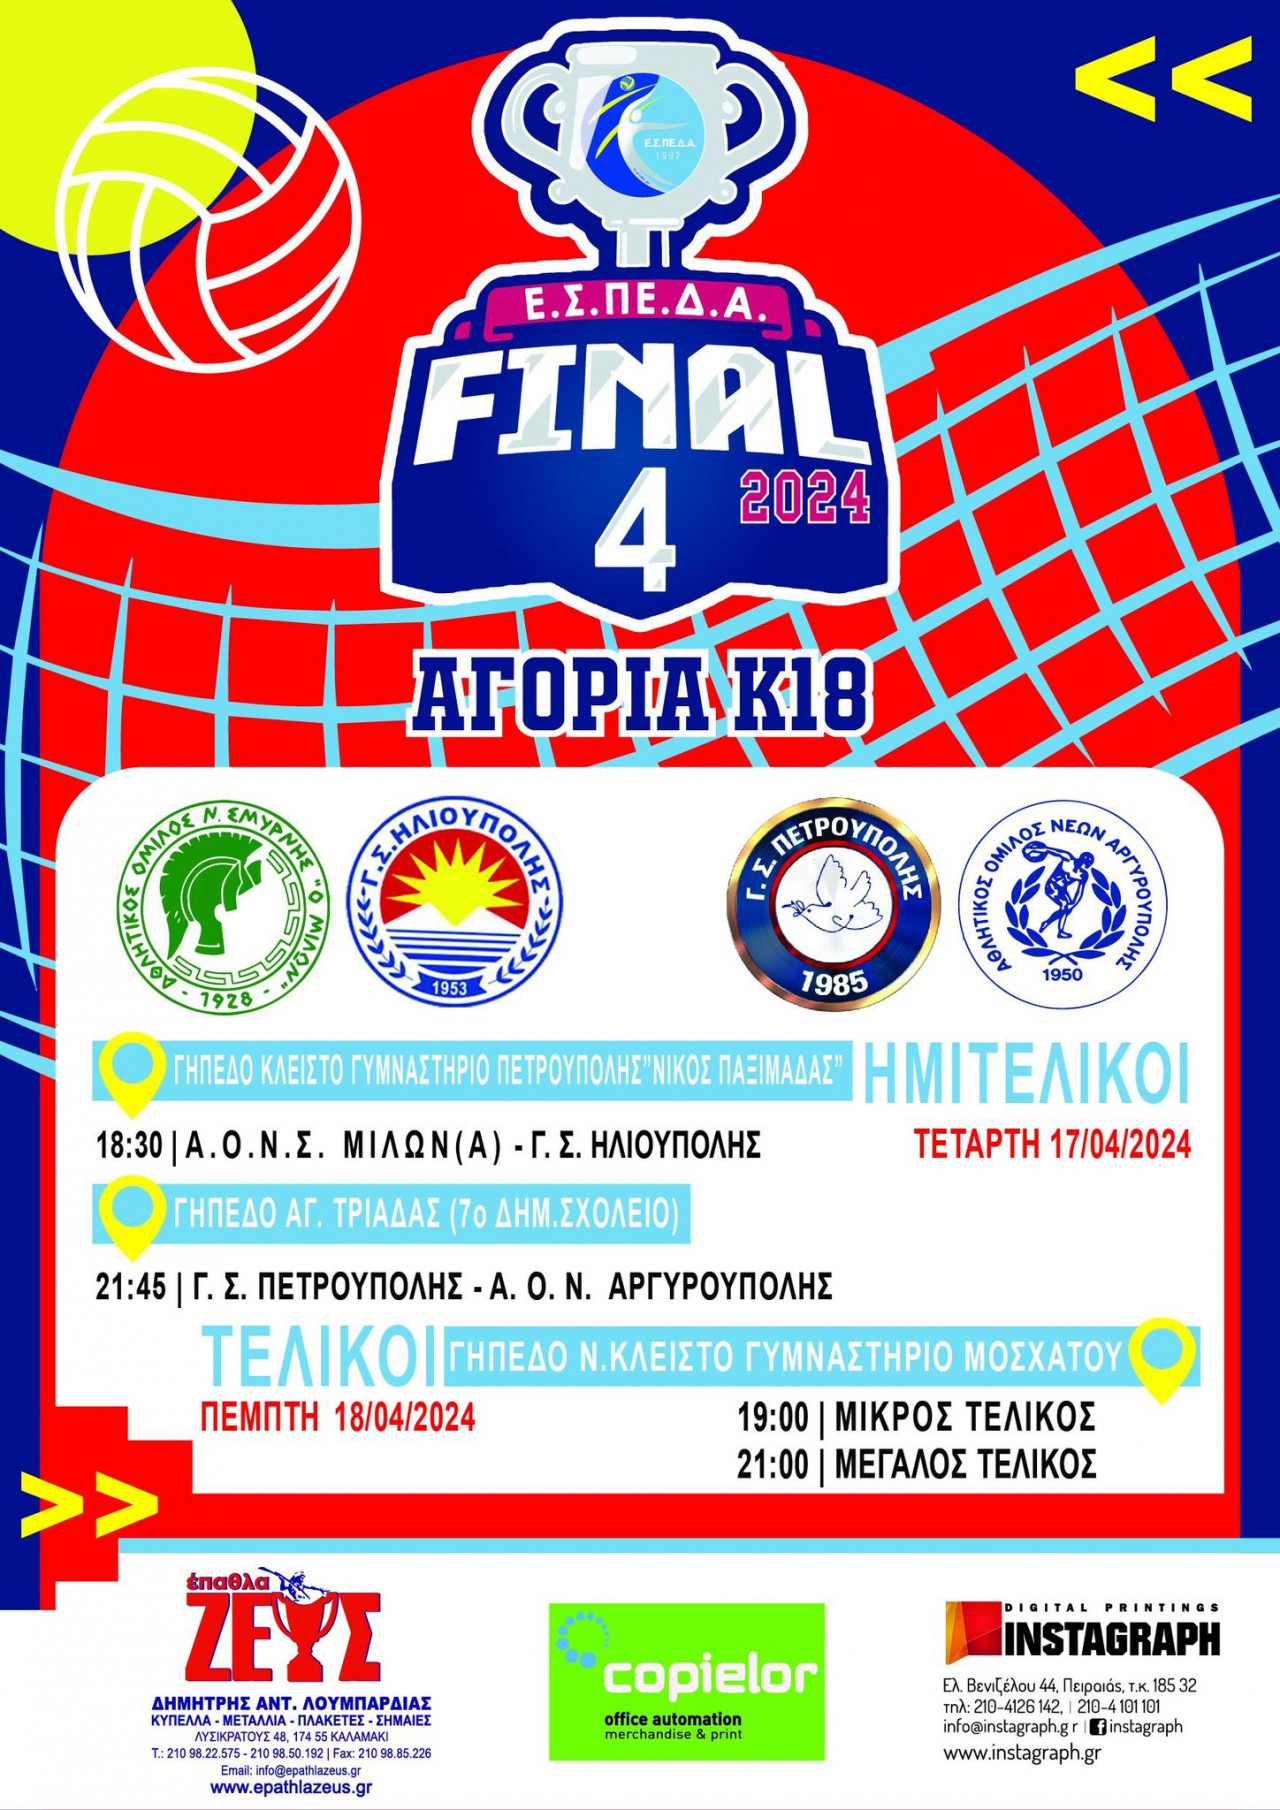 Τελική Φάση Αγοριών Κ18 ΕΣΠΕΔΑ: Πρώτο σερβίς  ημιτελικών final-4 στην Πετρούπολη-links μεταδοσης